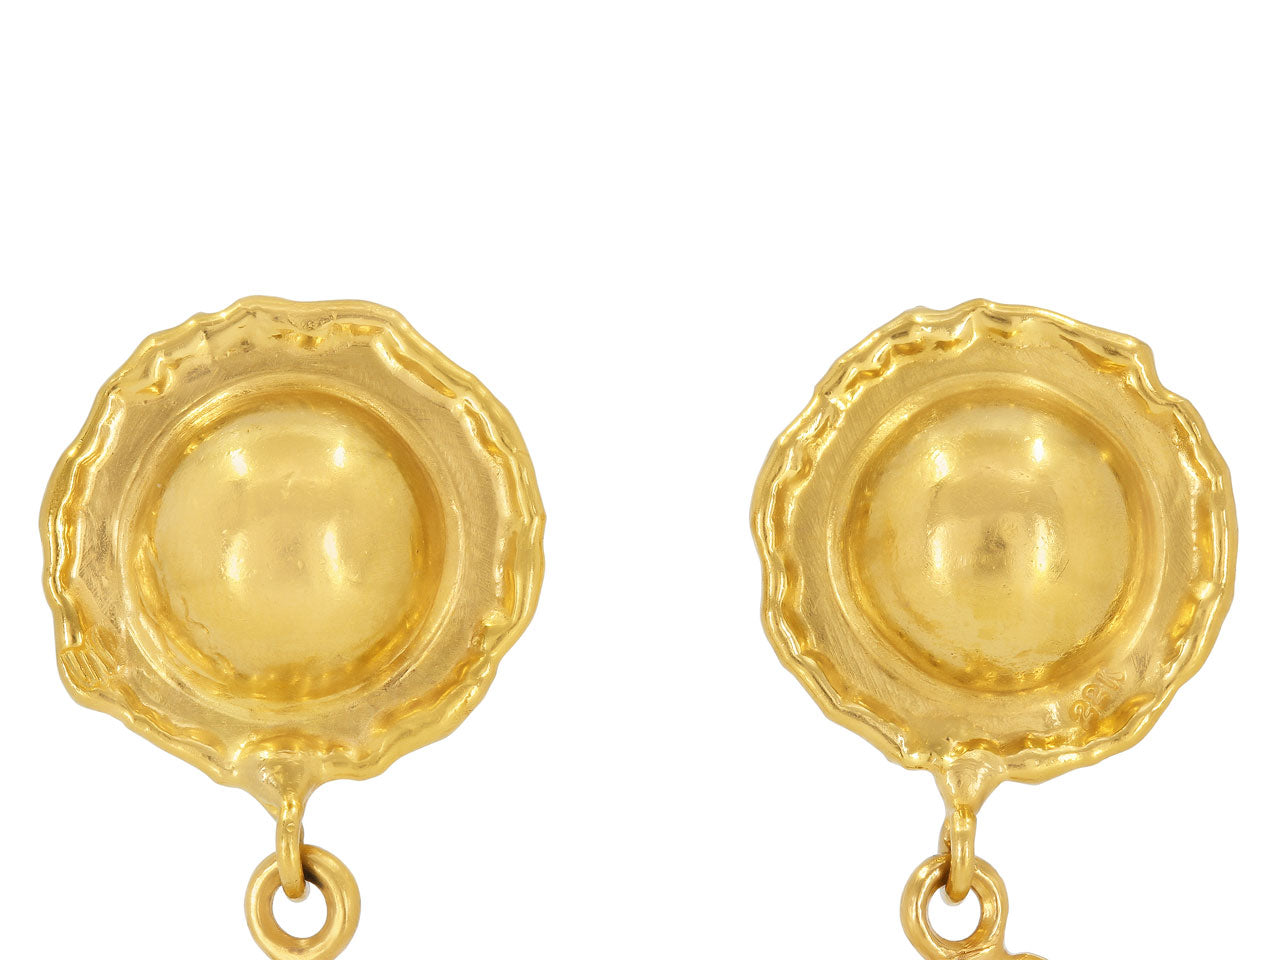 Jean Mahie Charming Monsters Earrings in 22K Gold